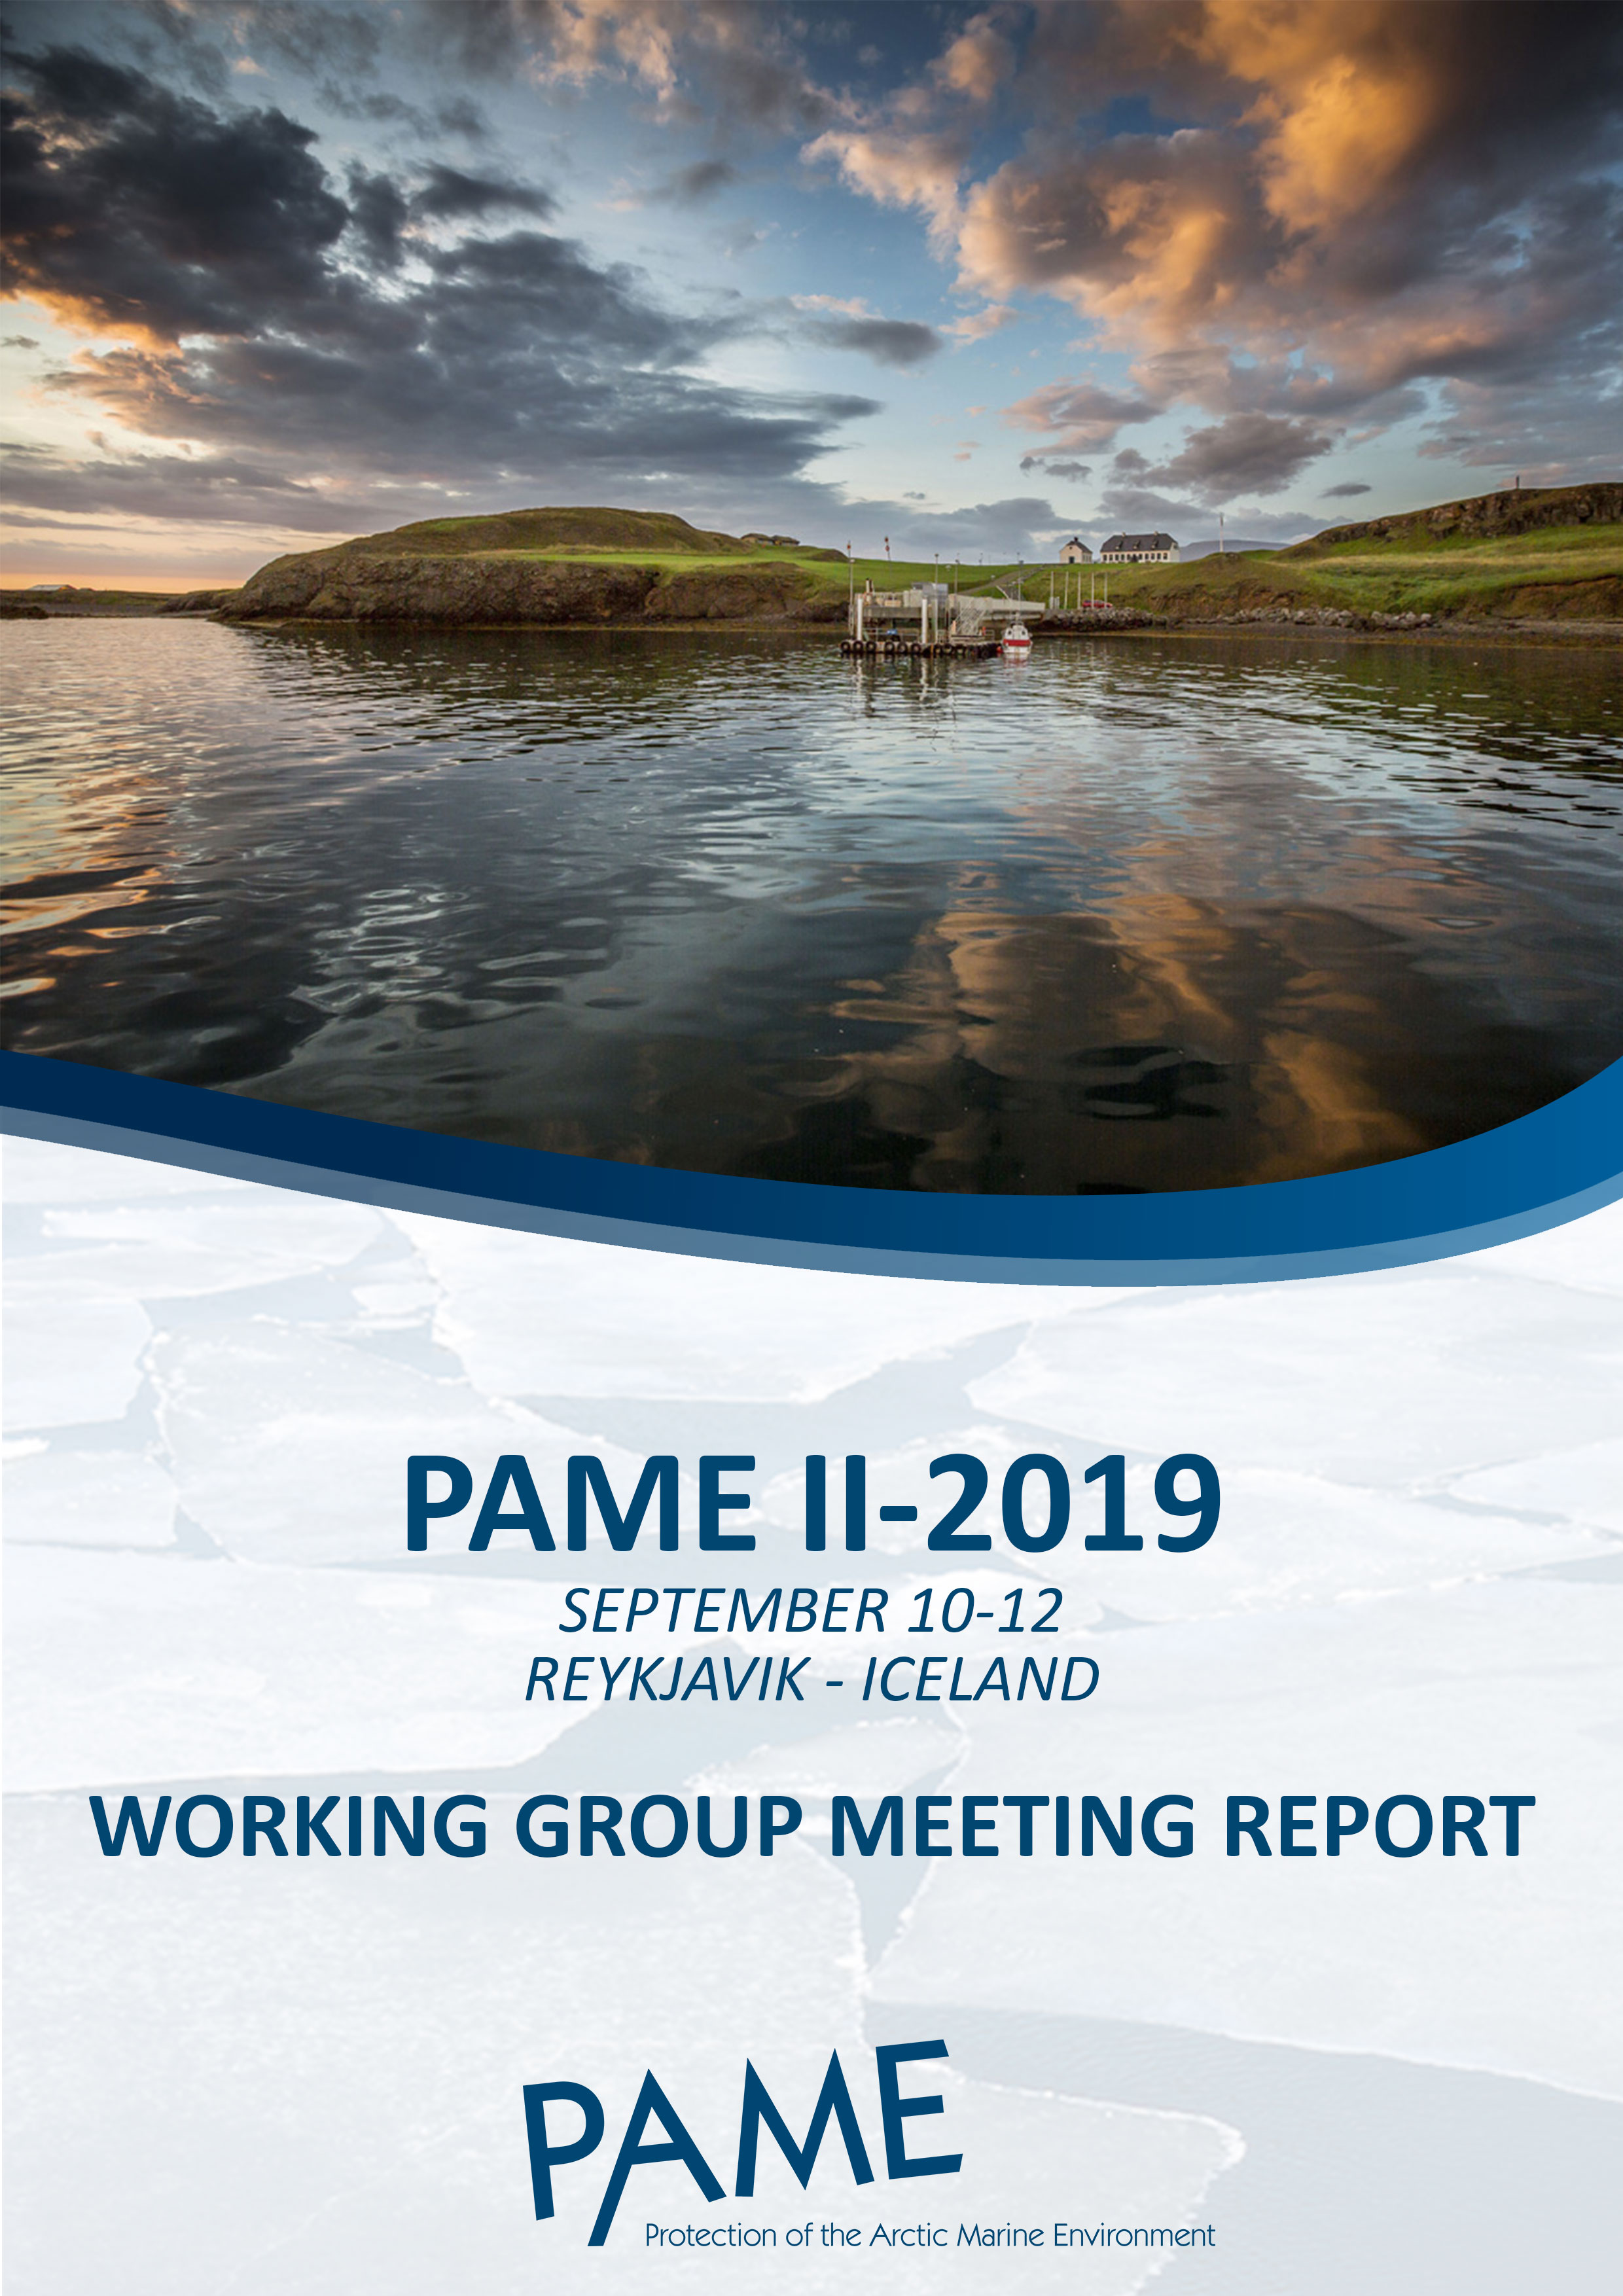 PAME II 2019 Meeting Report